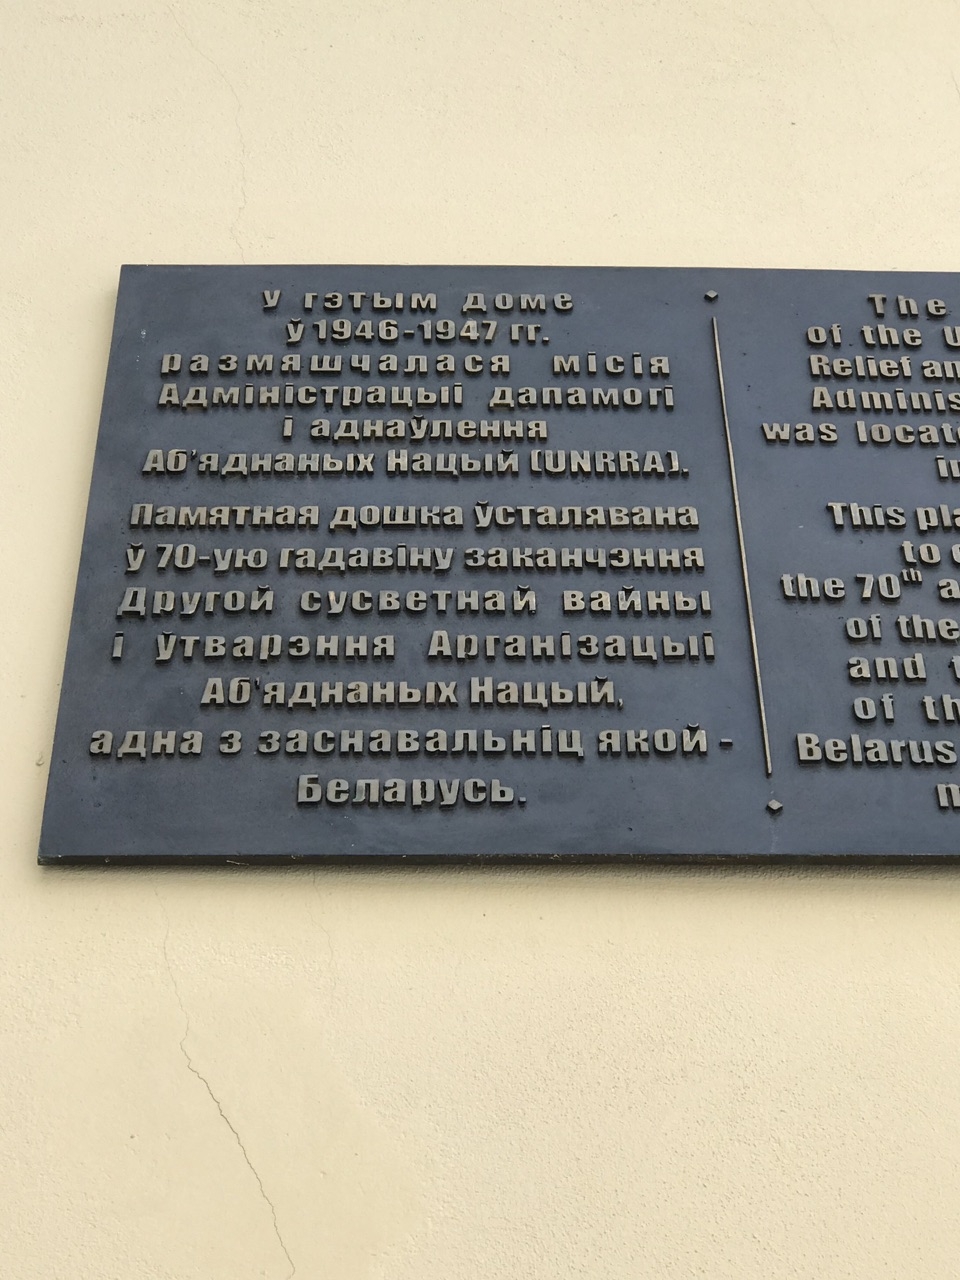 В этом доме в 1946-1947-м годах размещалась миссия ЮНРРА. Памятная доска установлена в 70-ю годовщину окончания Второй мировой войны и создания Организации Объединённых Наций, одна из основательниц которой — Беларусь. Минск, Беларусь